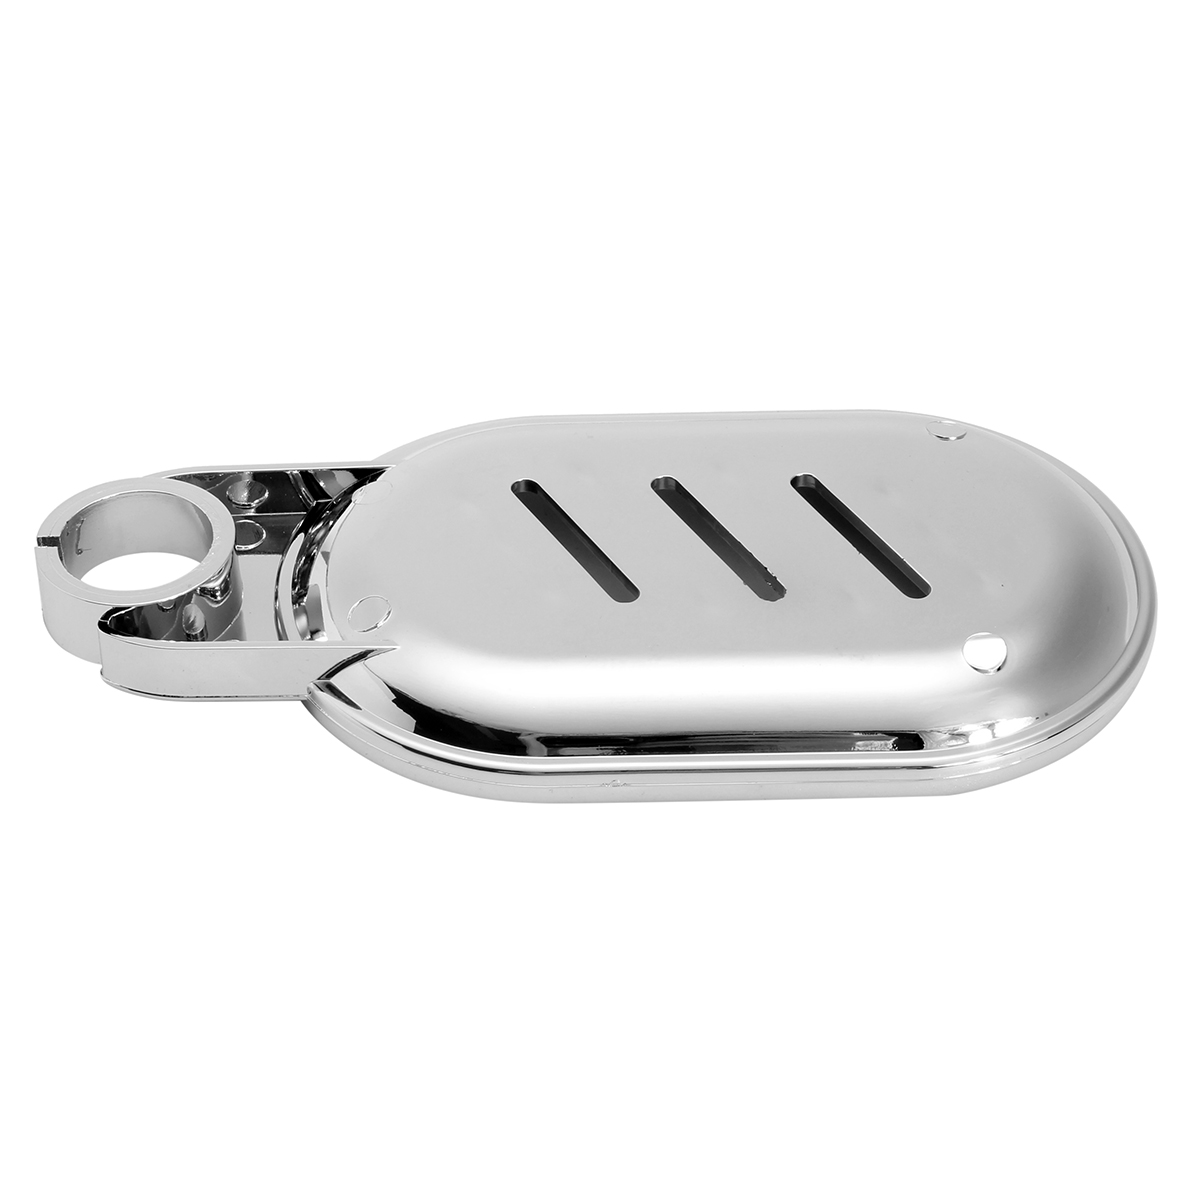 Soap-Dish-Adjustable-Shower-Rail-Slide-Soap-Plates-Smooth-Bathroom-Holder-1211173